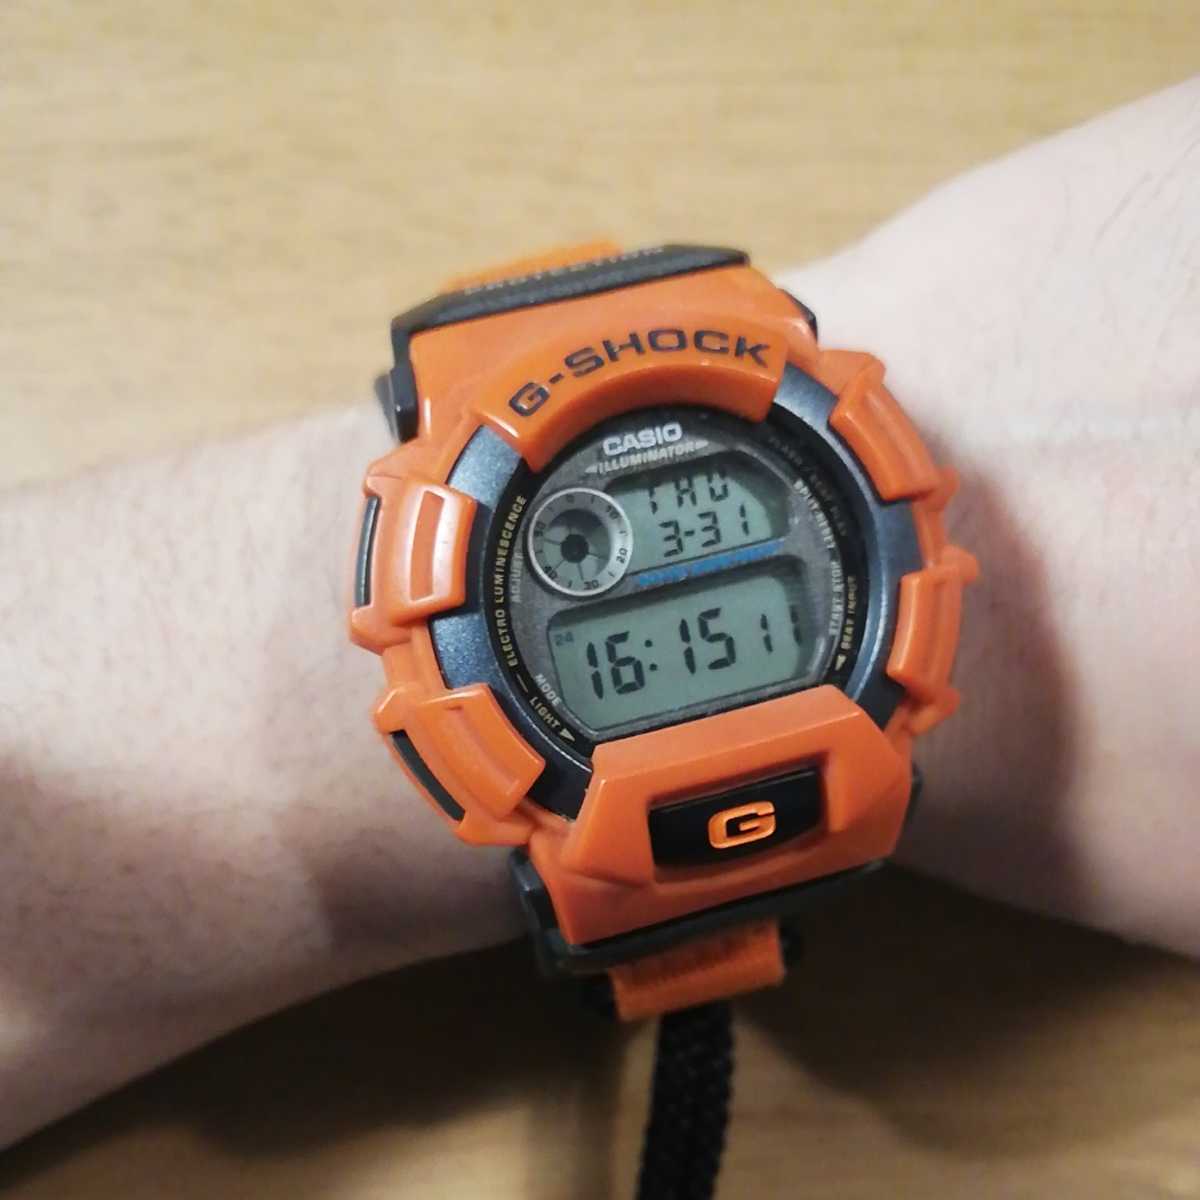 レアカラー 90's廃盤 カシオ G-SHOCK クォーツ腕時計 コードタイプ 